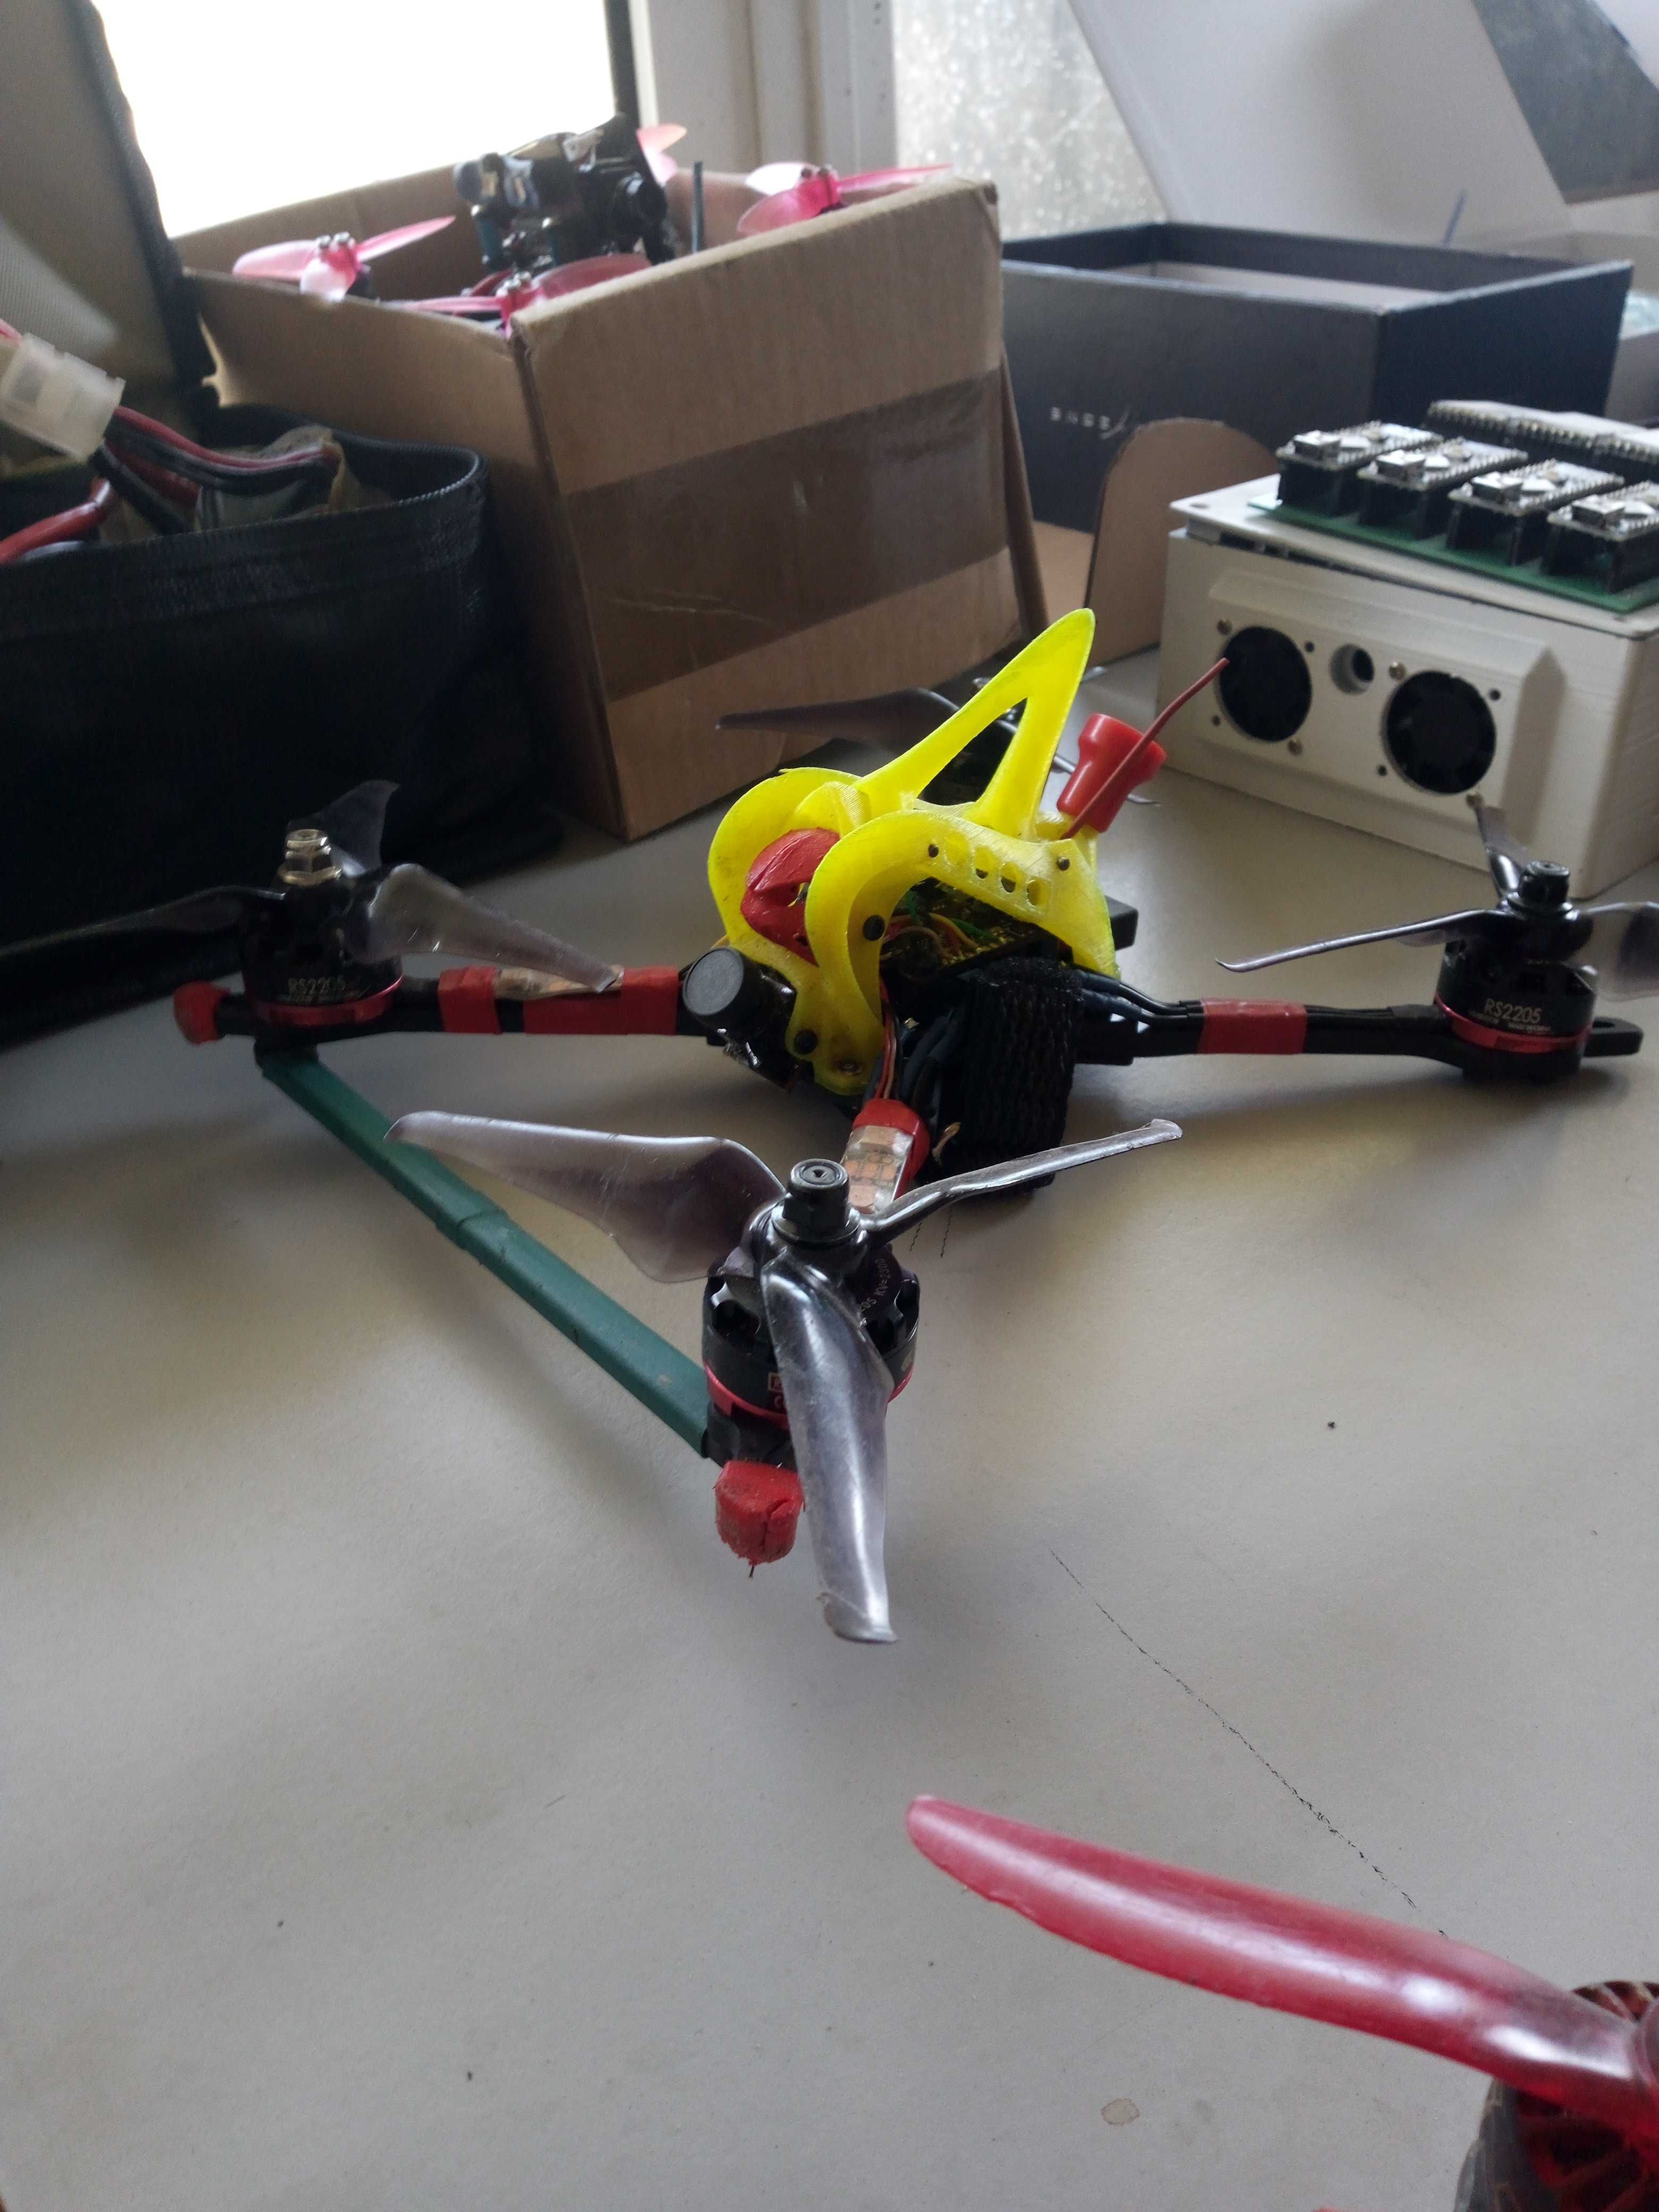 Drone racing FPV - tudo completo